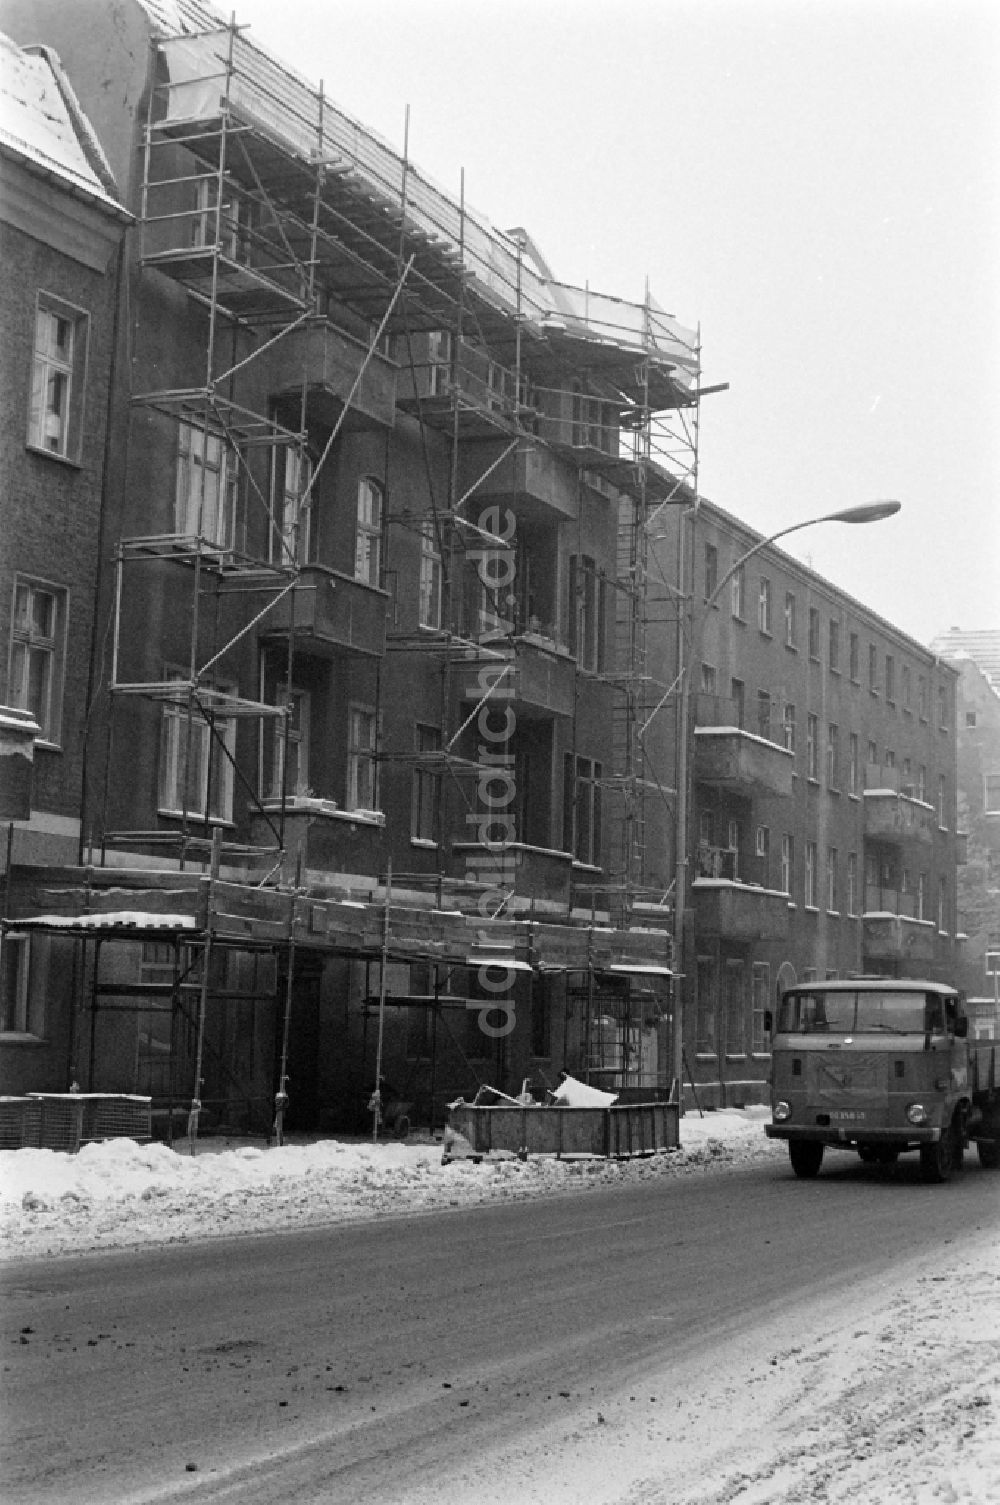 DDR-Bildarchiv: Berlin - Winter in der Siemensstraße im Ortsteil Treptow-Köpenick in Berlin, der ehemaligen Hauptstadt der DDR, Deutsche Demokratische Republik